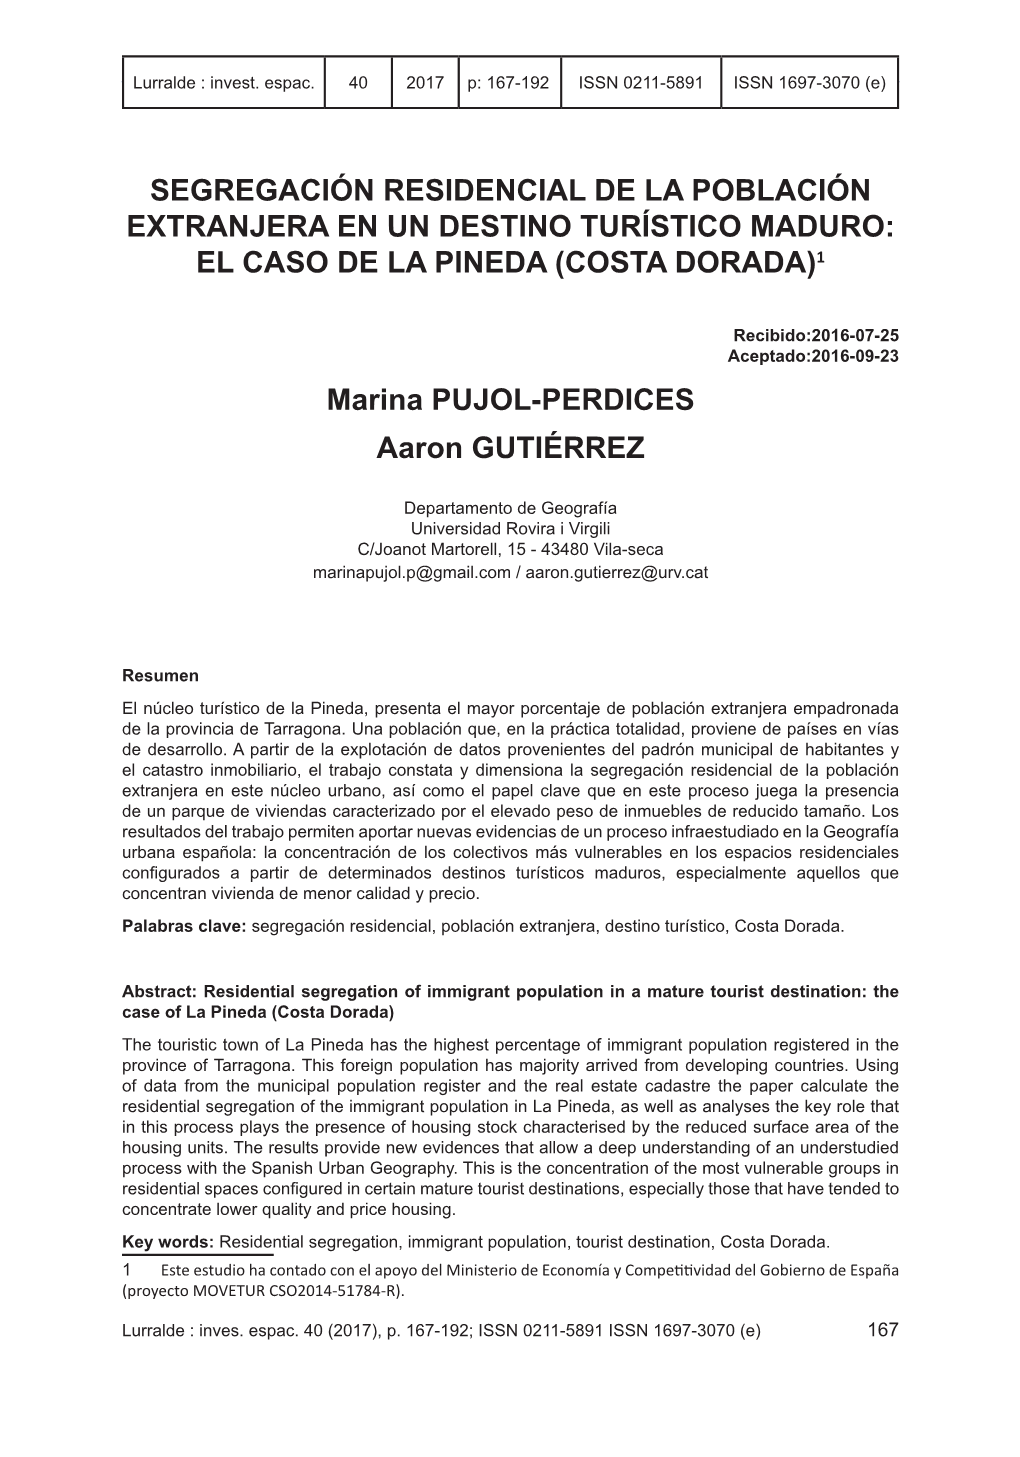 SEGREGACIÓN RESIDENCIAL DE LA POBLACIÓN EXTRANJERA EN UN DESTINO TURÍSTICO MADURO: EL CASO DE LA PINEDA (COSTA DORADA)1 Marin